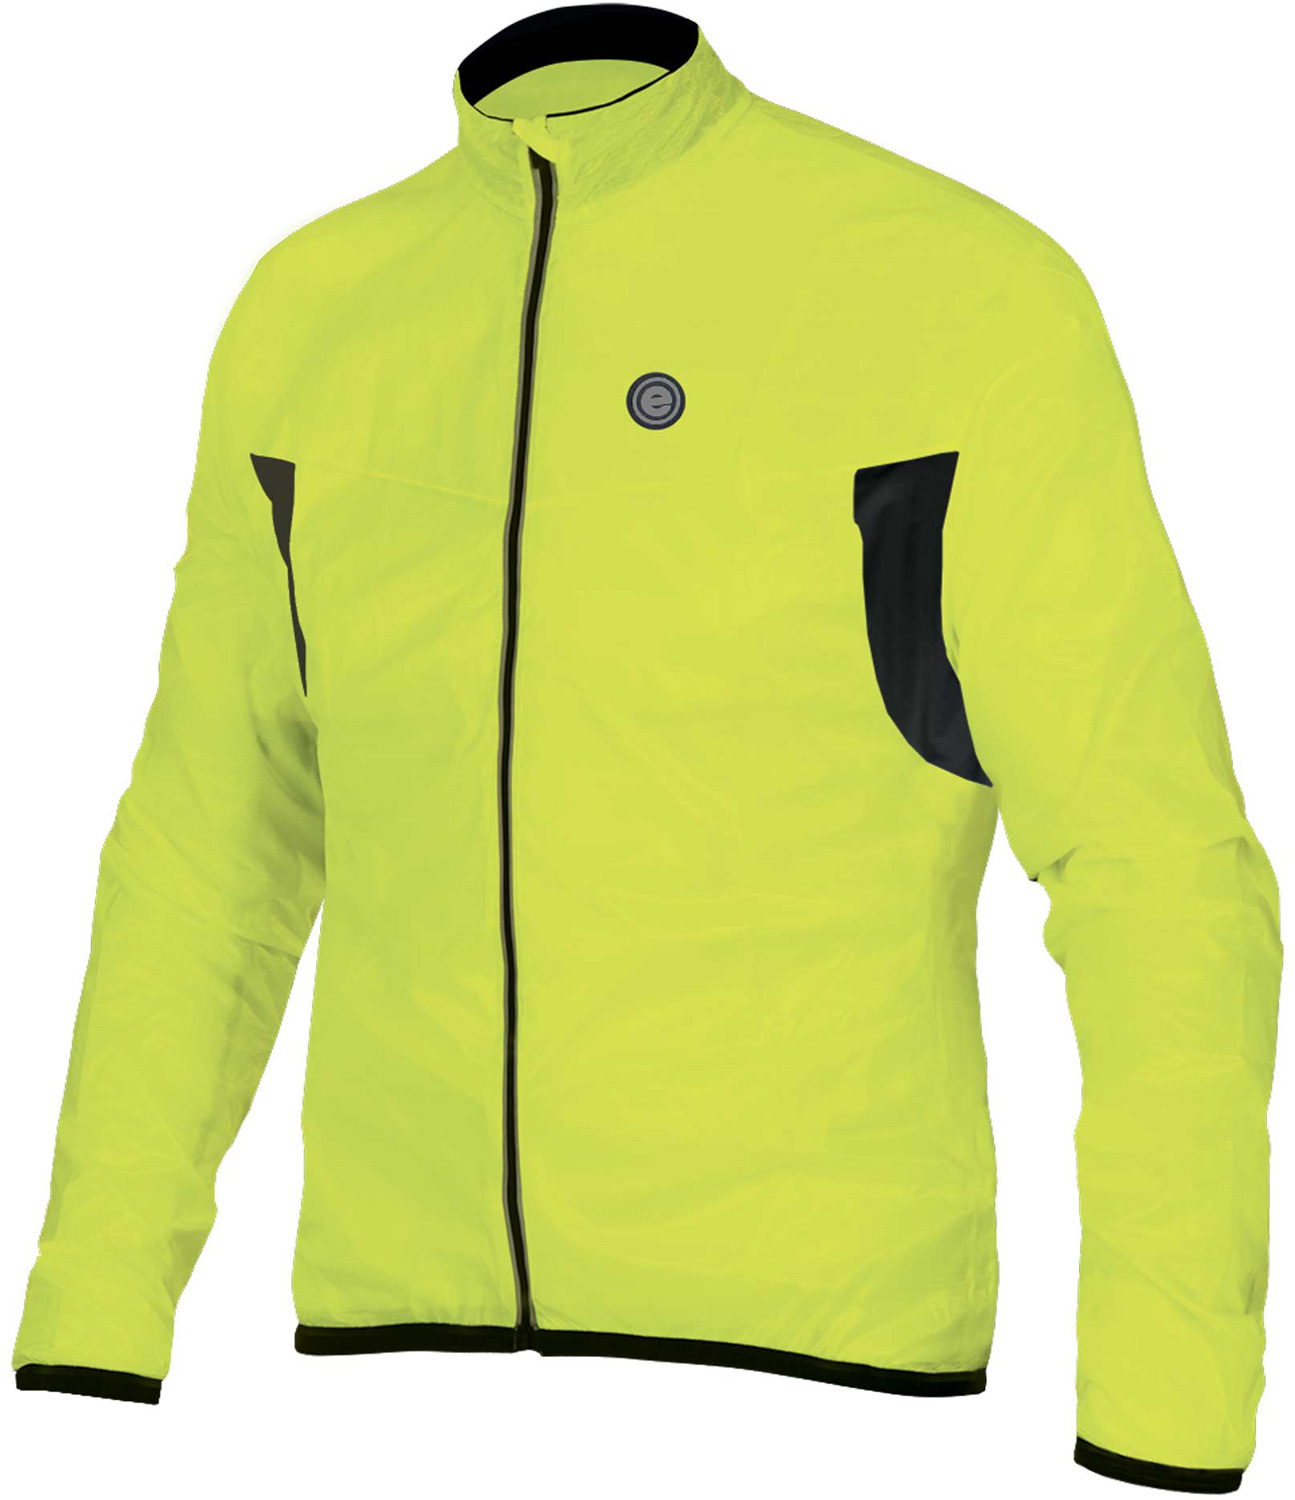 Cycling jacket